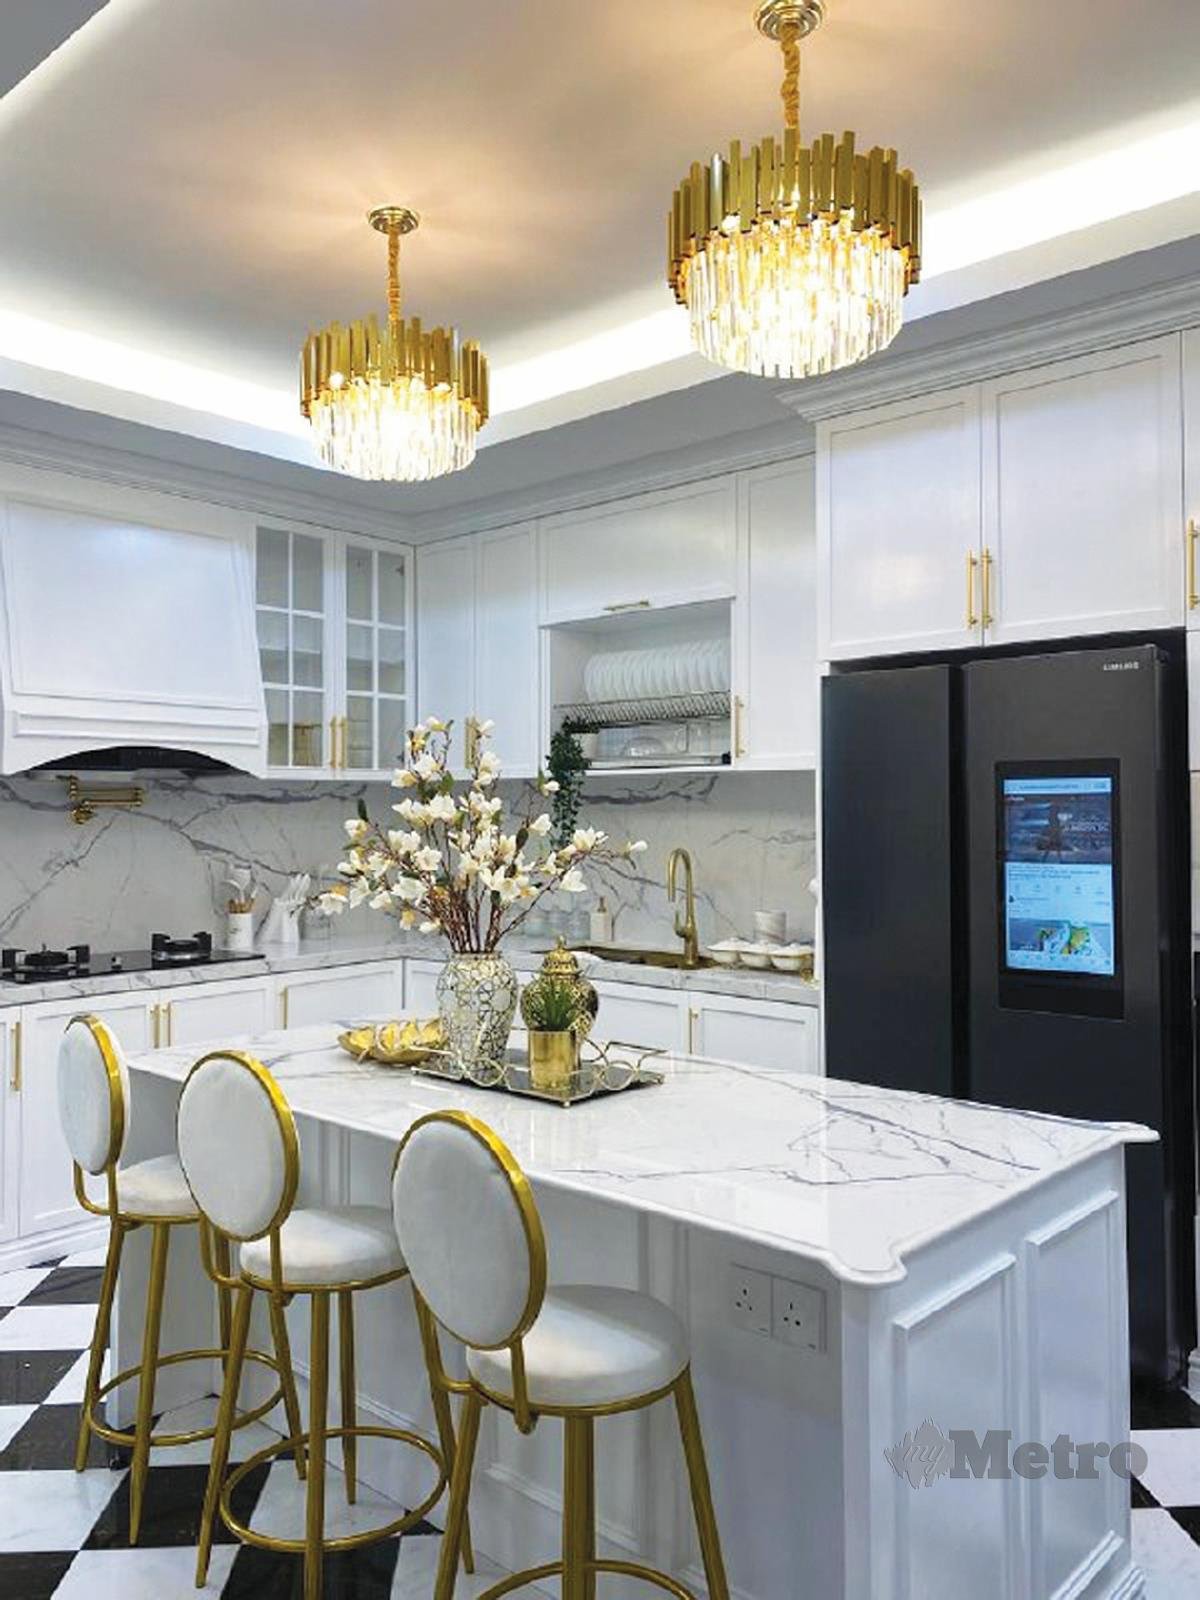 DEKORASI ruang dapur yang moden dan elegan. 